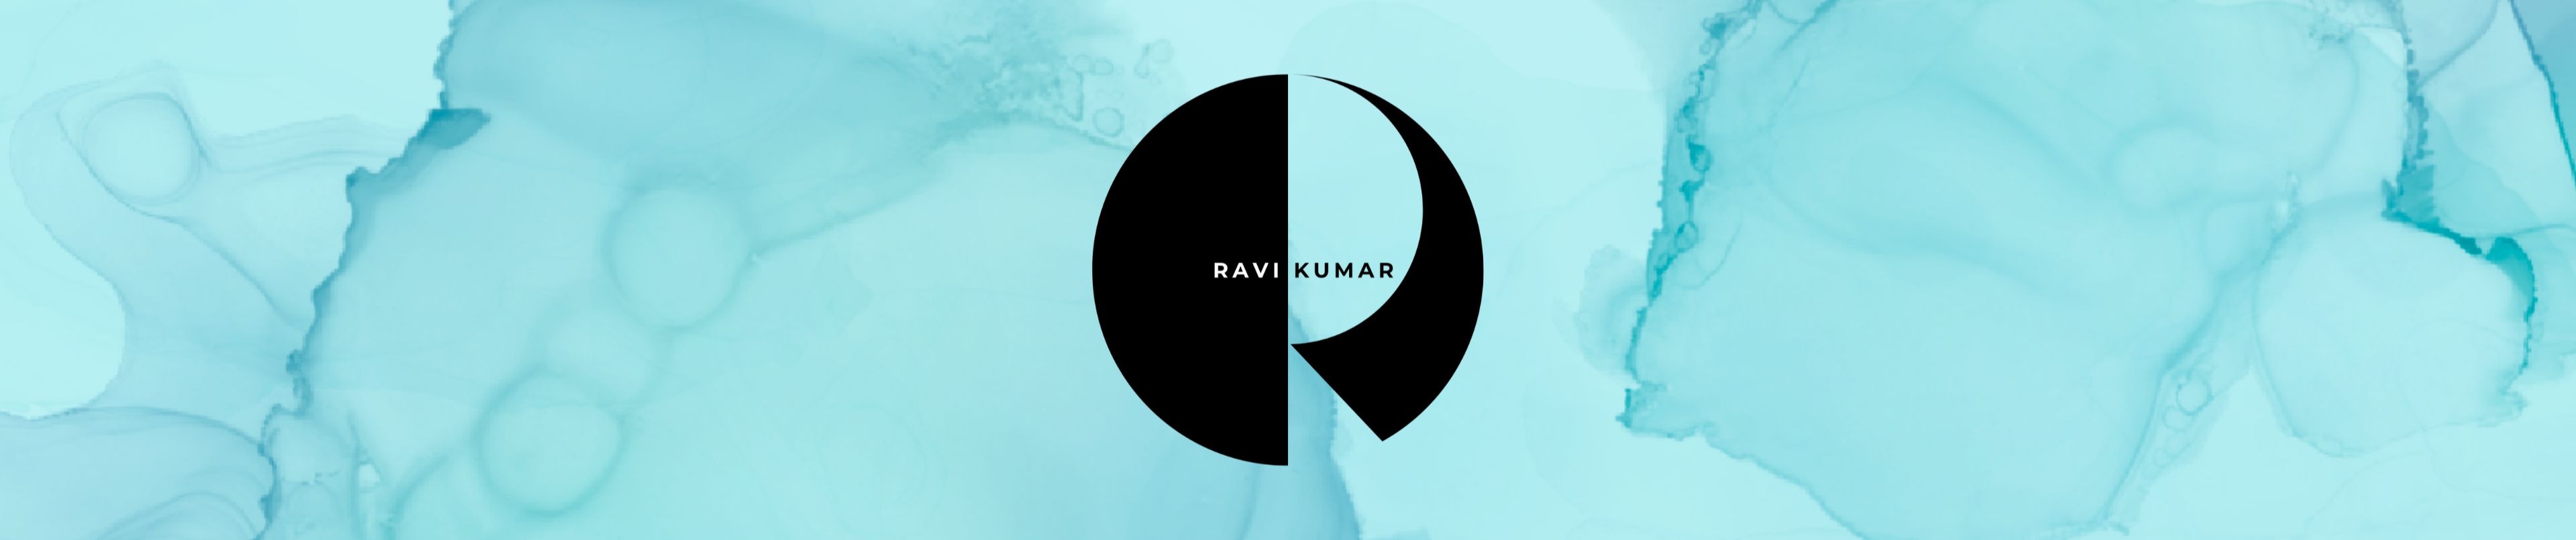 Surya Kumar Ravi - Rendering particle animation